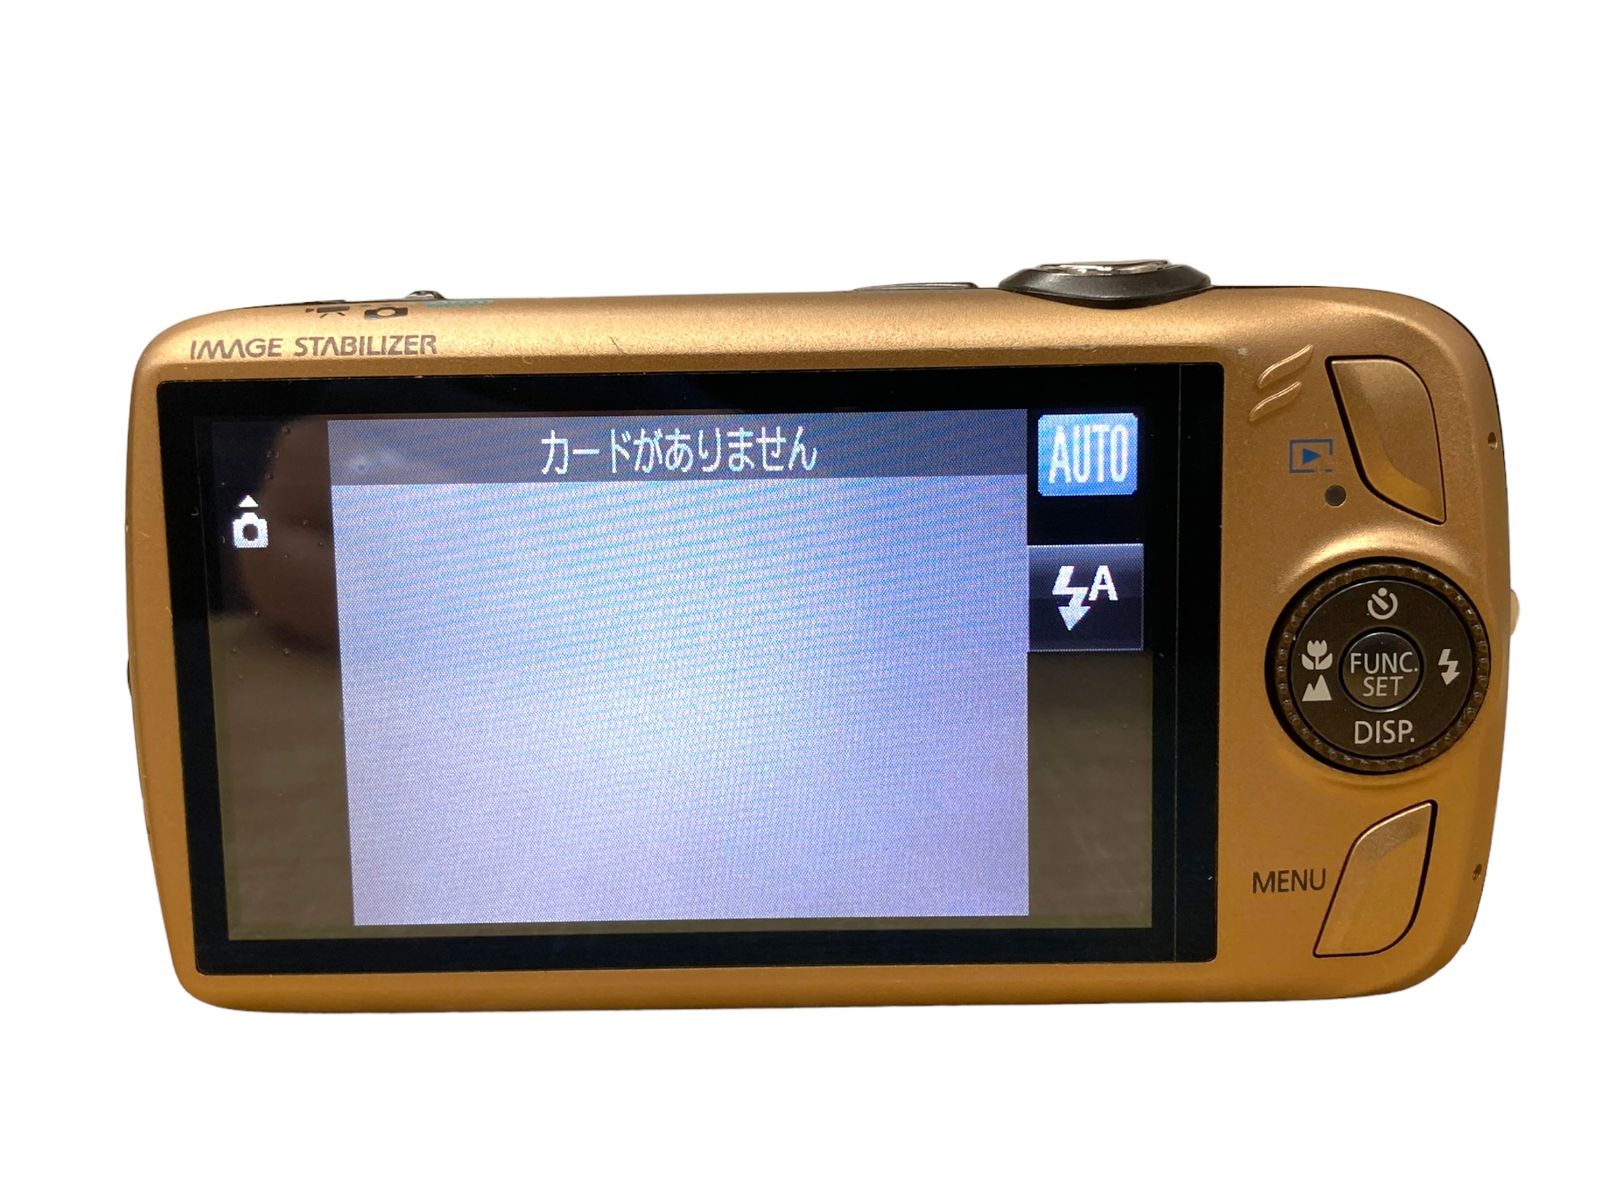 Canon デジタルカメラ IXY DIGITAL 930 IS ブラウン IXYD930IS(BW) タッチフォーカス  4.3(W)-21.5(T)mm /027 メルカリShops